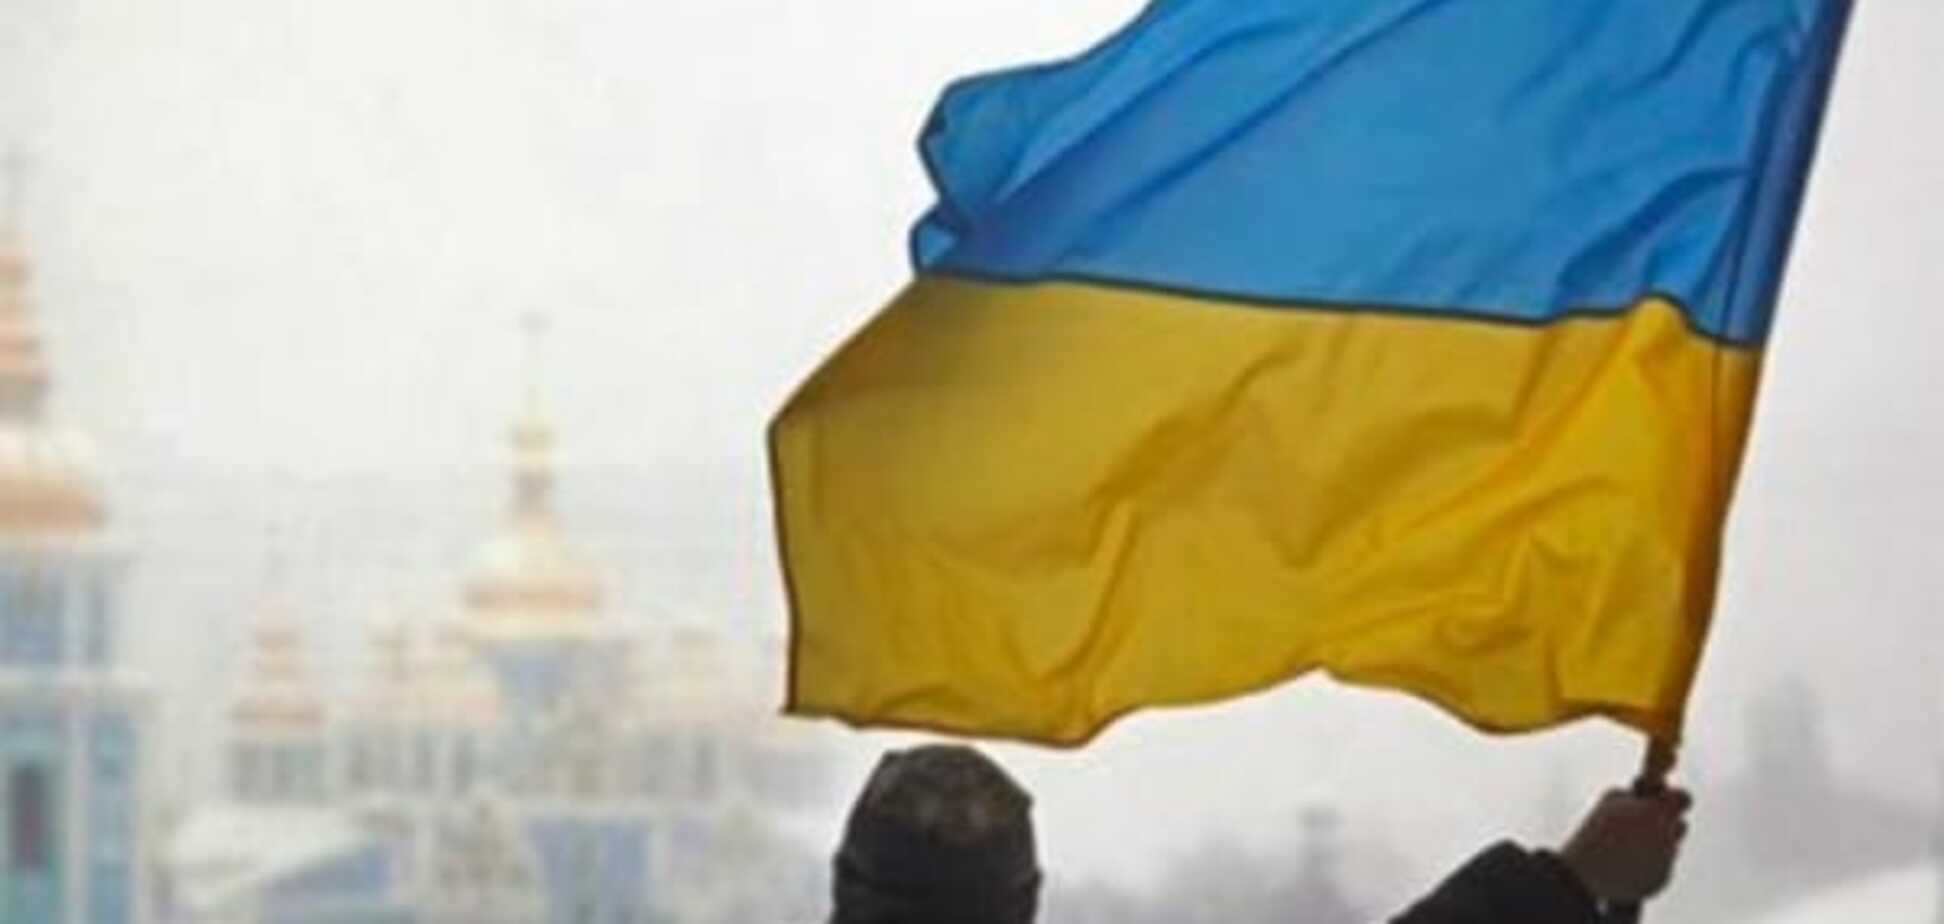 Подавляющее большинство украинцев недовольны изменениями в стране - опрос